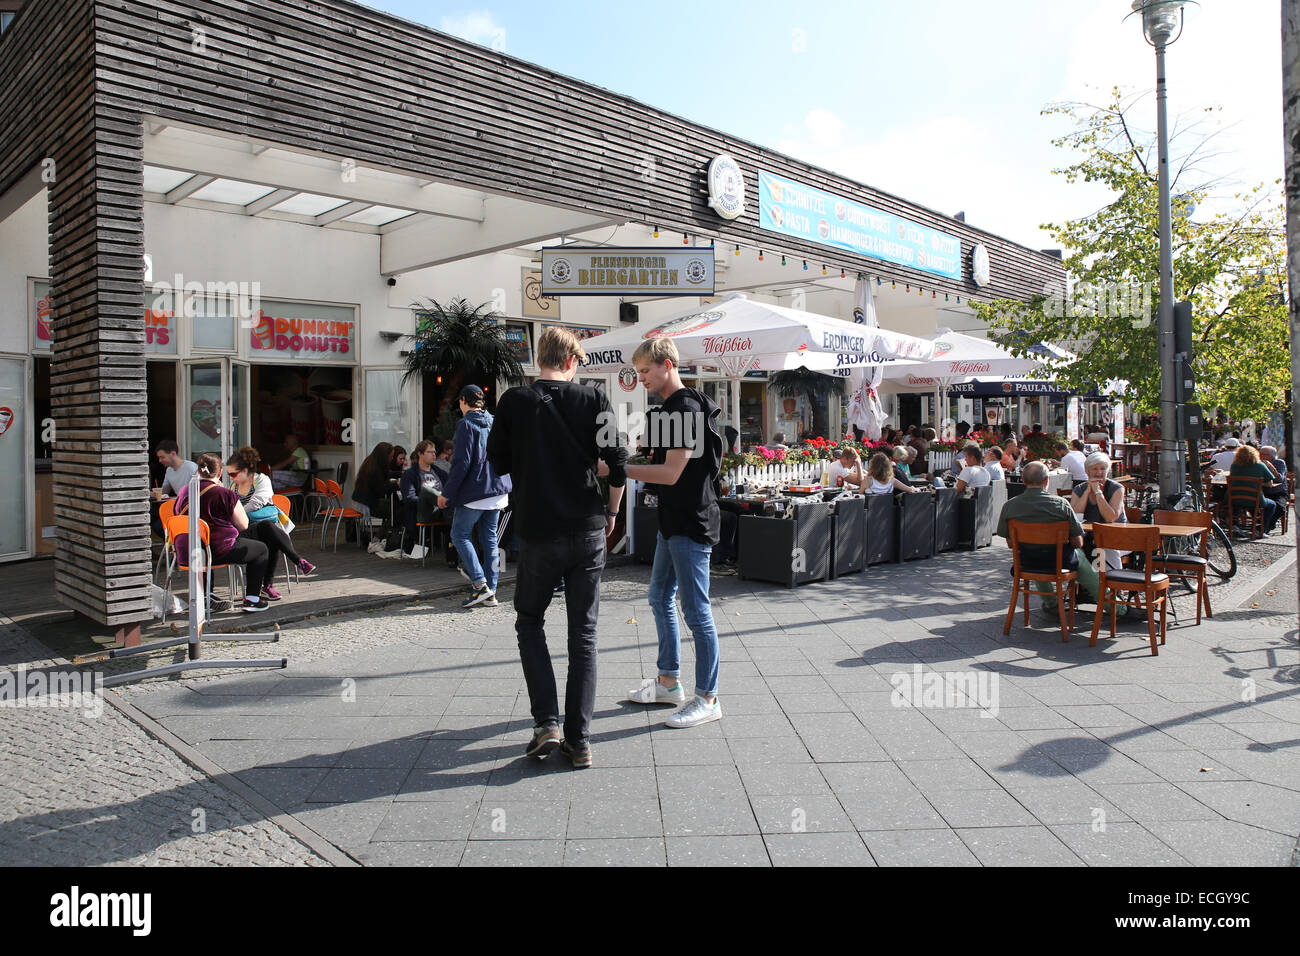 Berlin restaurant customer outdoor patio Stock Photo